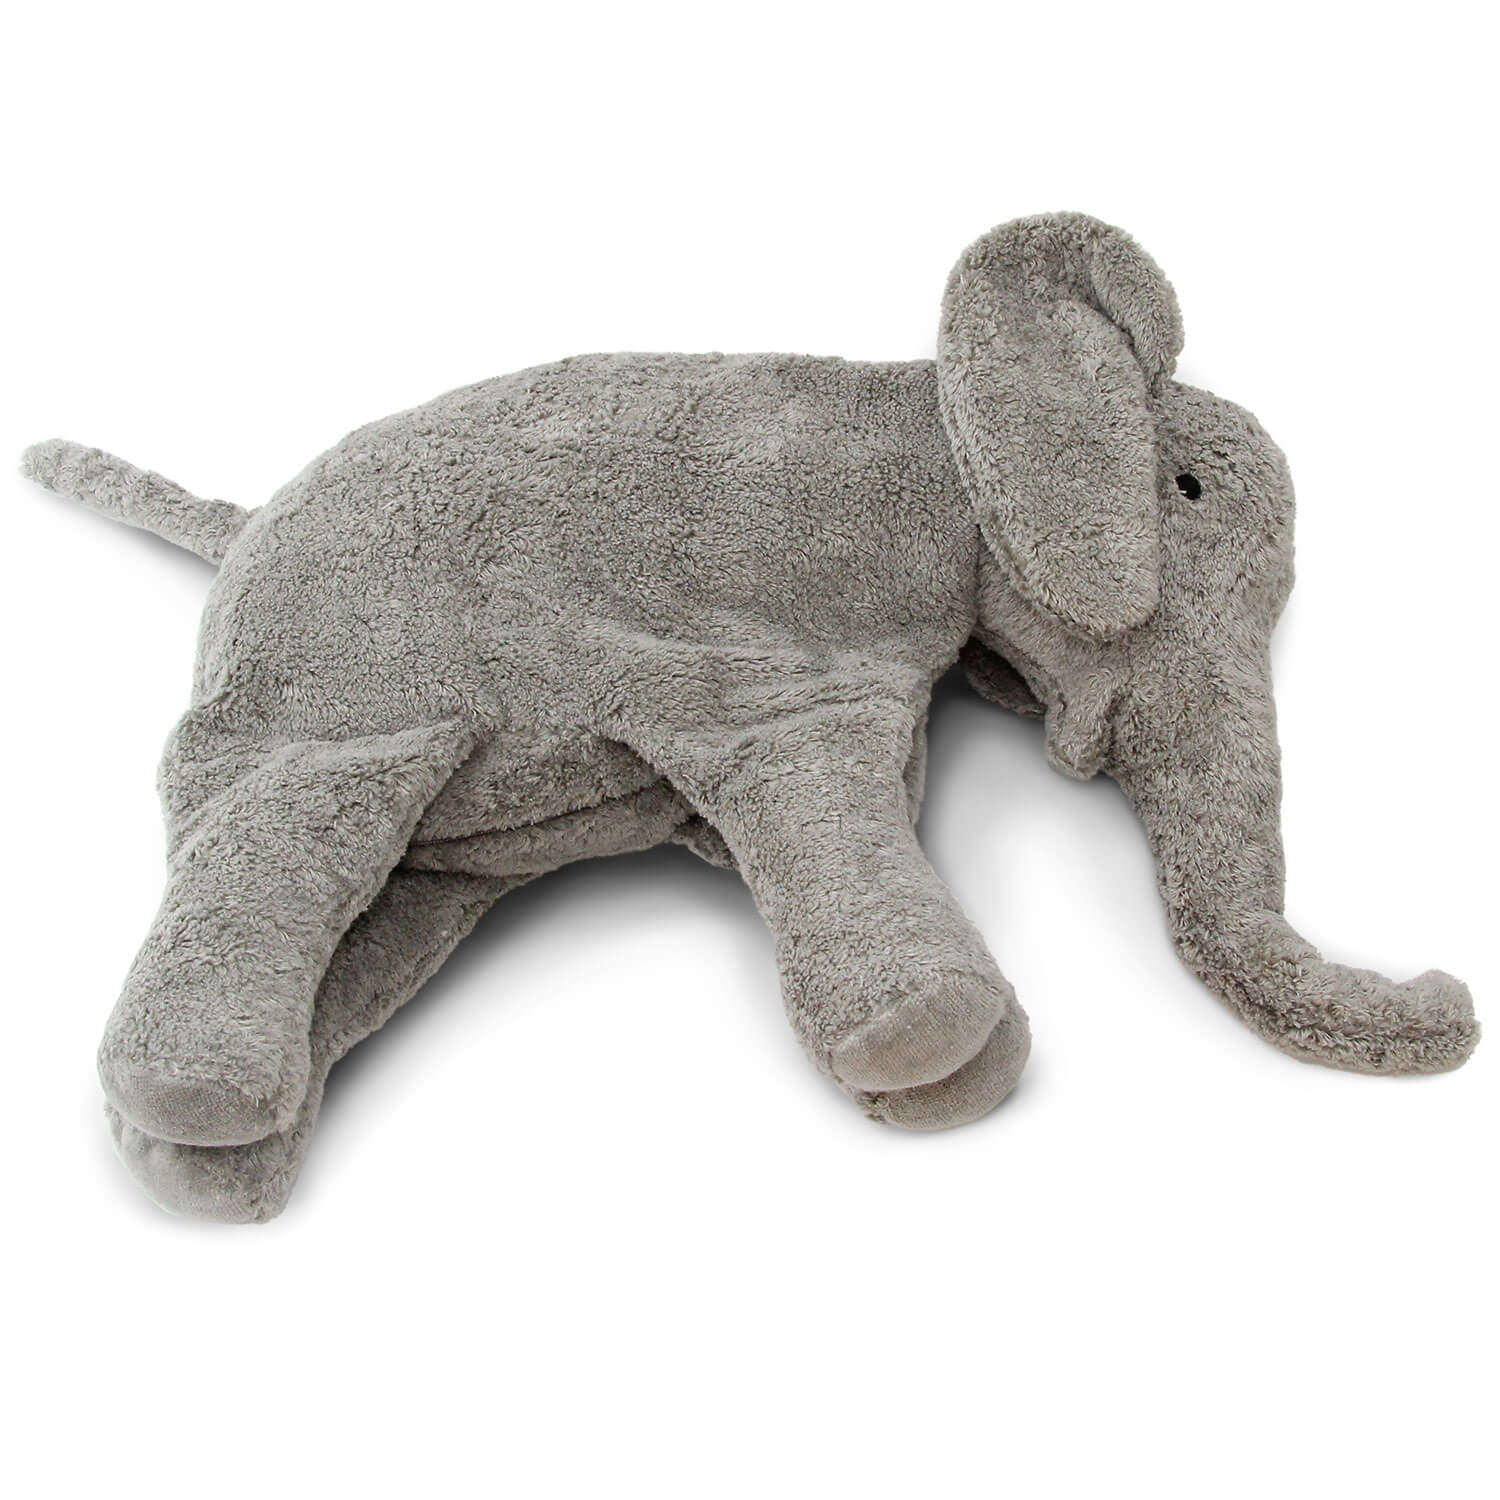 Extra Large Hugging Safari Soft Plush Cuddly Animal Grey Elephant Toy New 